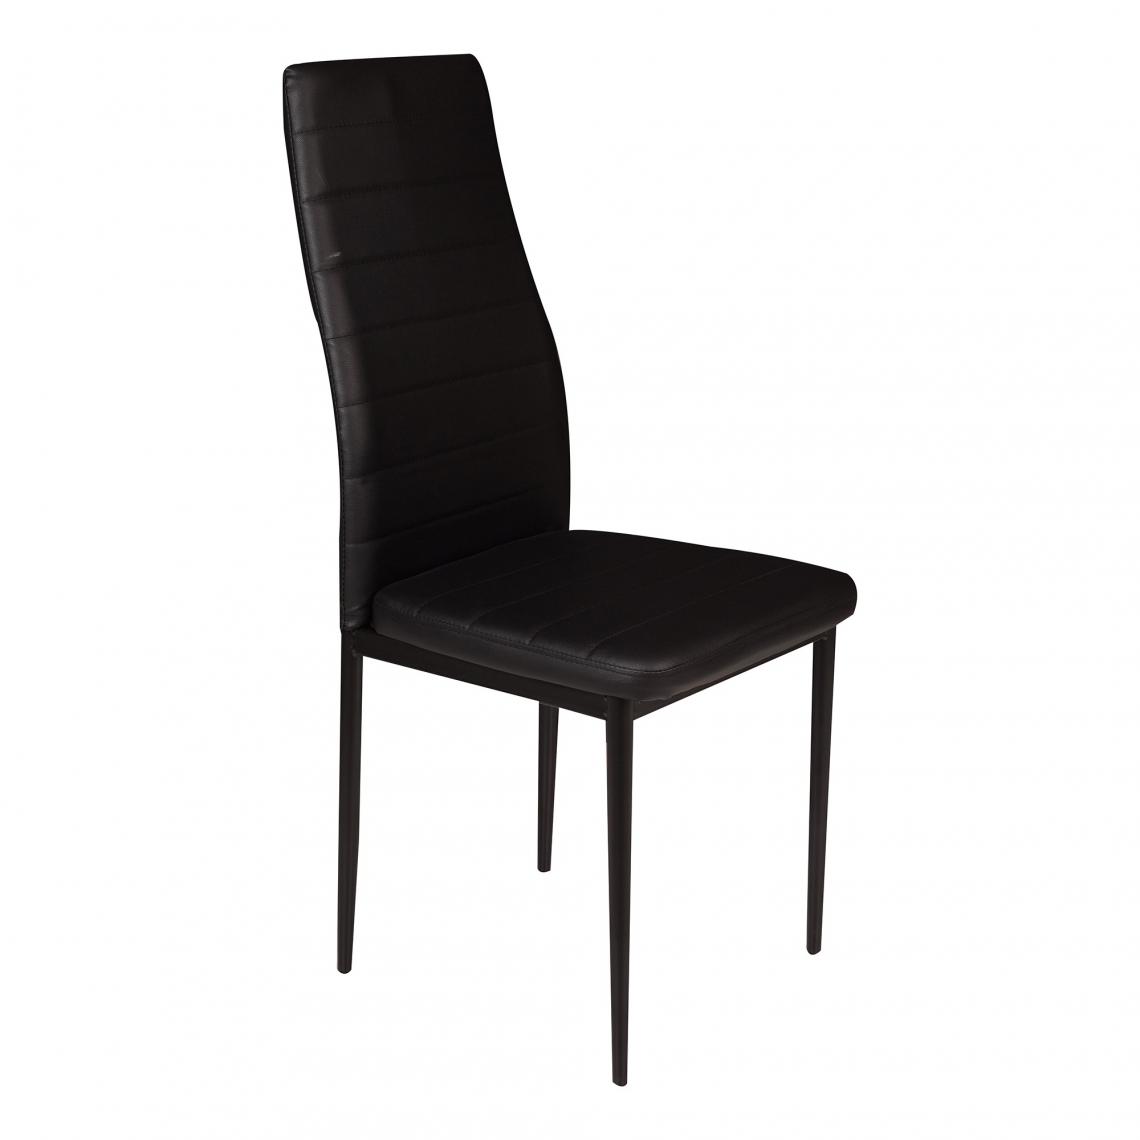 Alter - Chaise en éco-cuir rembourrée avec coutures apparentes et pieds en métal, Fauteuil pour salle à manger, cm 46x41h97, Couleur noire - Chaises